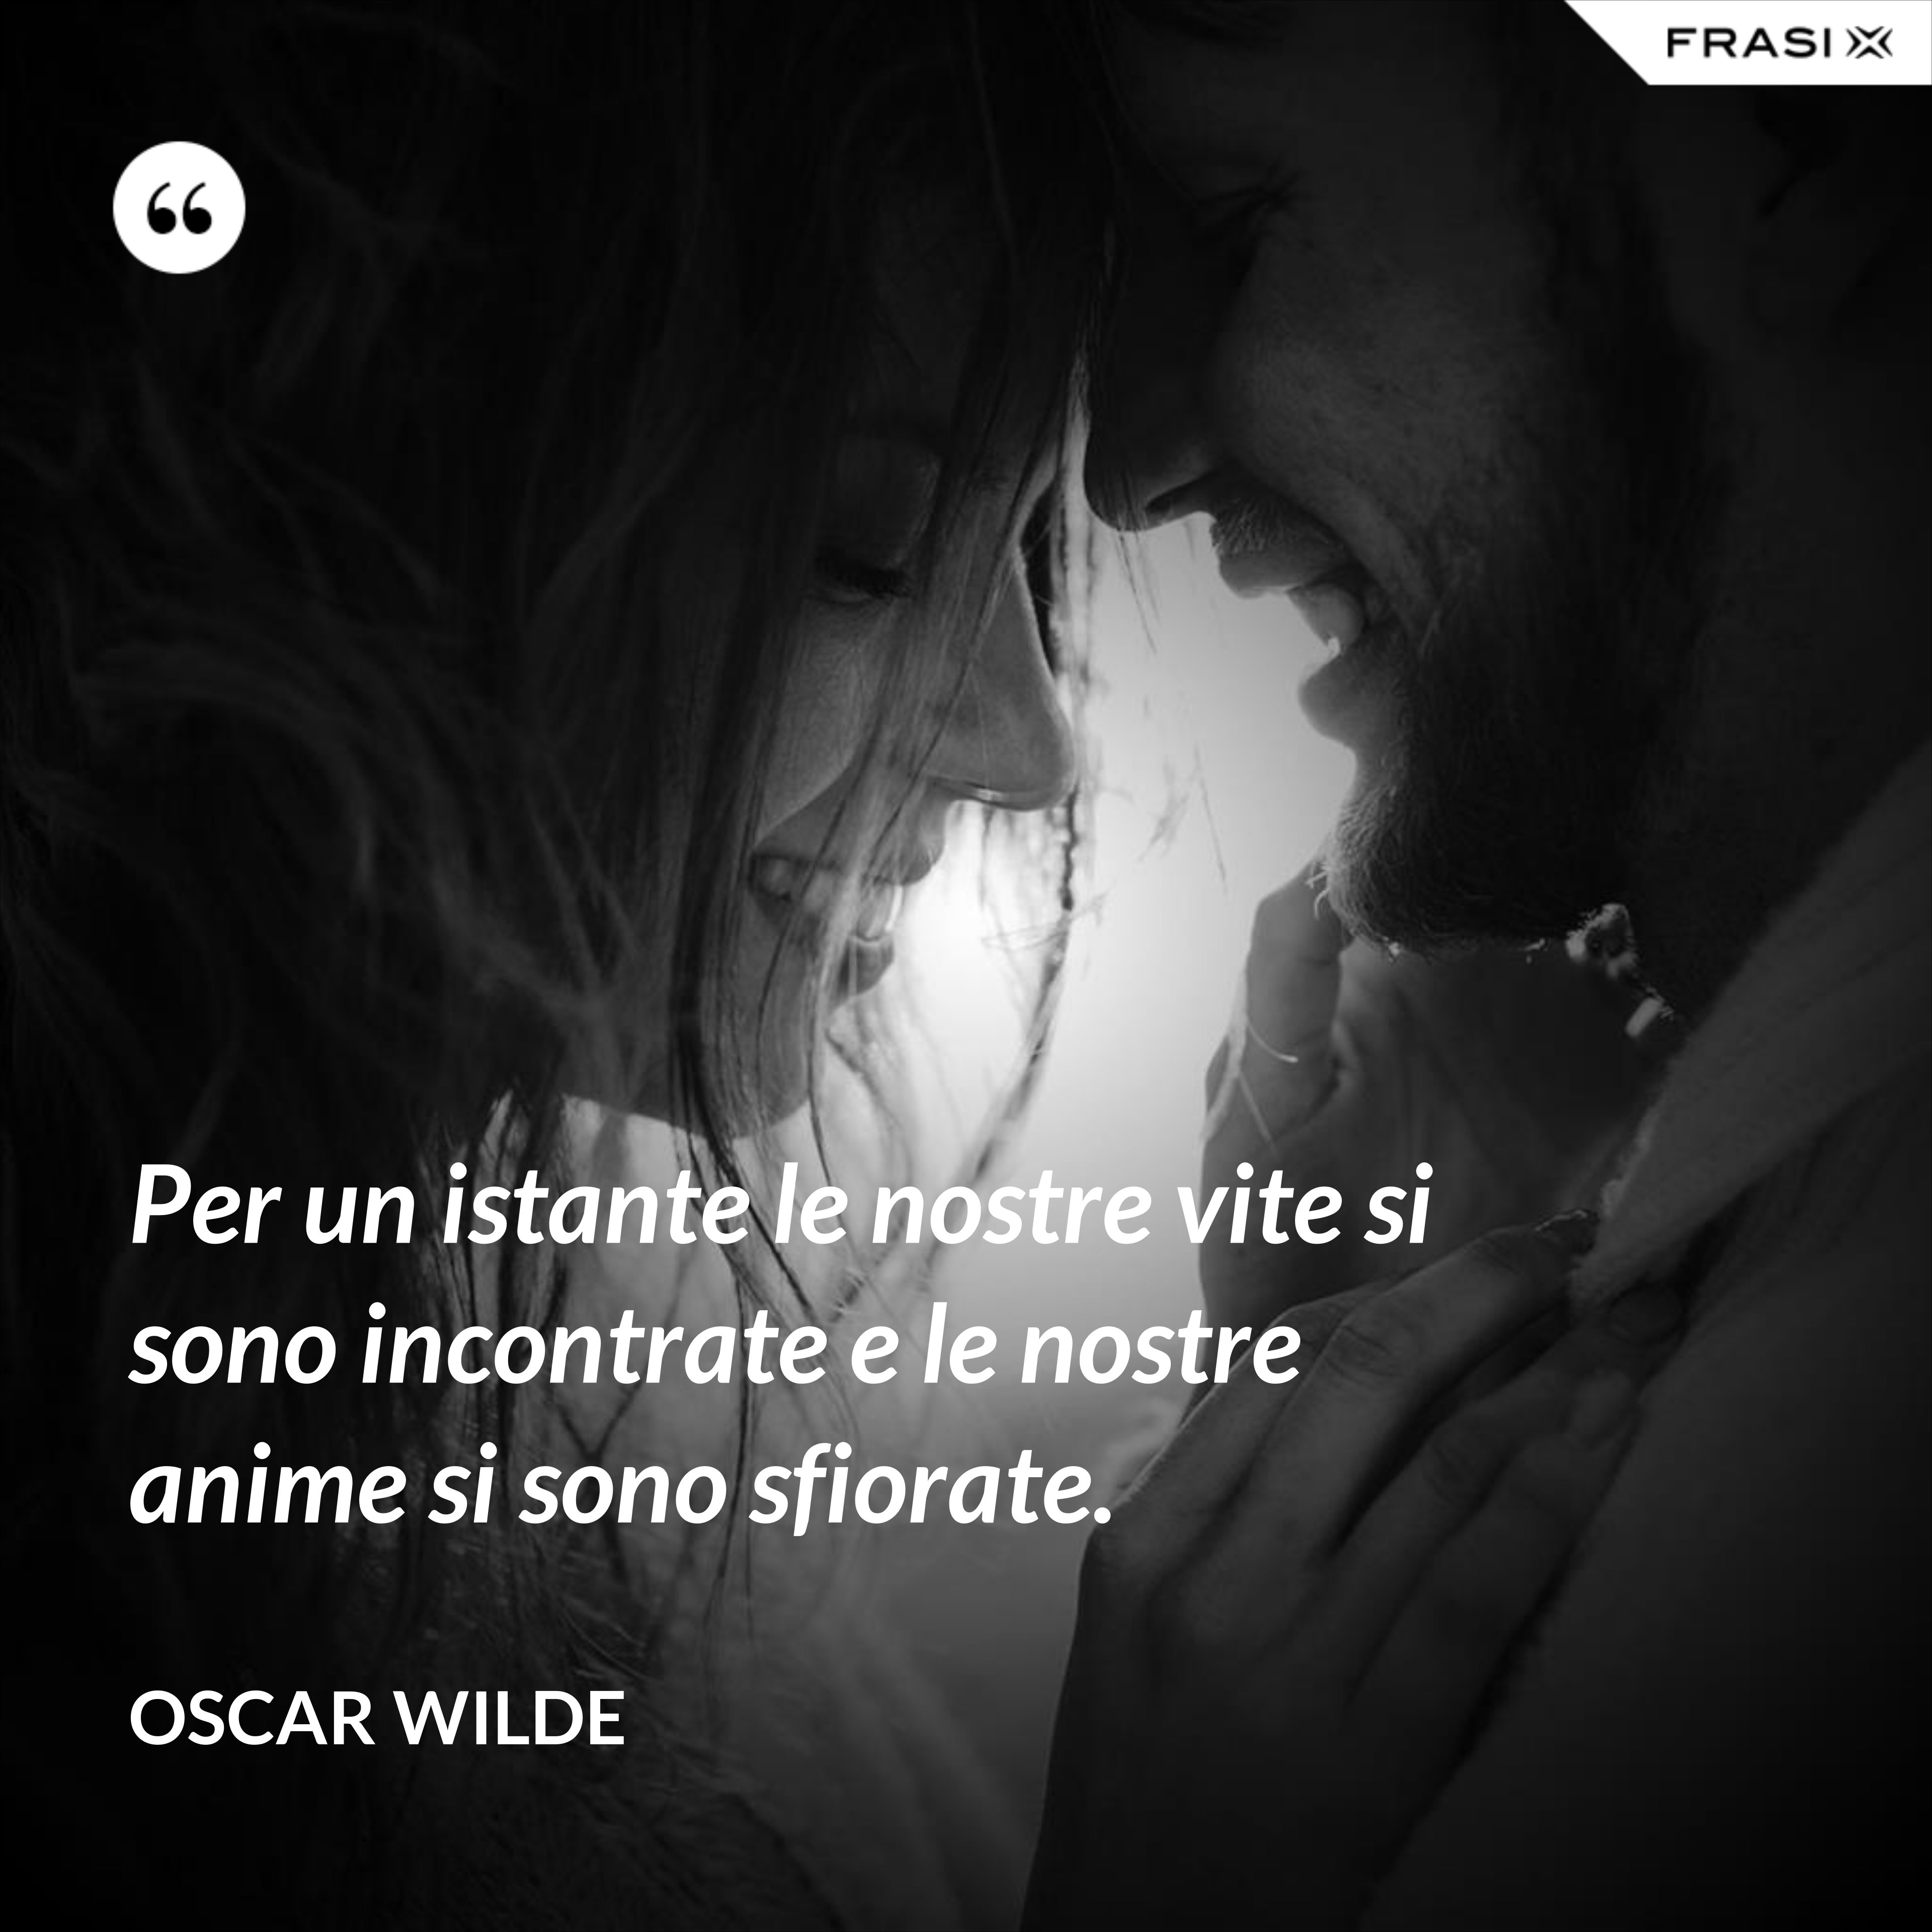 Per un istante le nostre vite si sono incontrate e le nostre anime si sono sfiorate. - Oscar Wilde